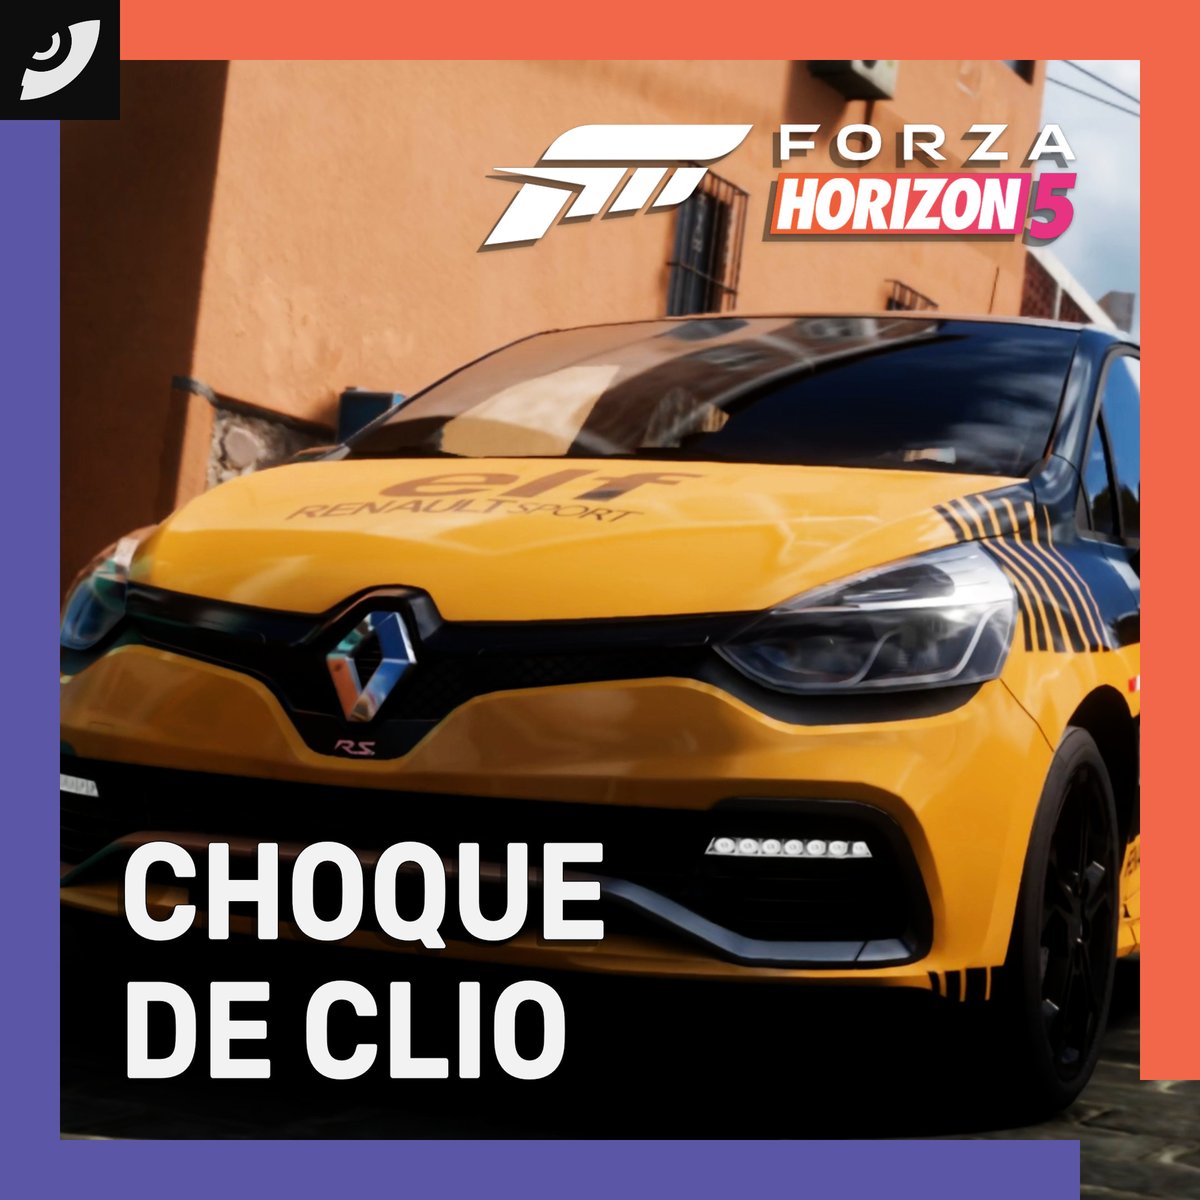 Bora para o Forza Horizon 5! Hoje, enfrentamos o desafio Choque de Clio. Nosso Renault Clio R.S. 200 EDC está pronto para provar sua habilidade na classe B. Vamos dominar as estradas e deixar nossa marca! Link do canal no perfil. #MurucutuGames #ForzaHorizon5 #ApexAllstars